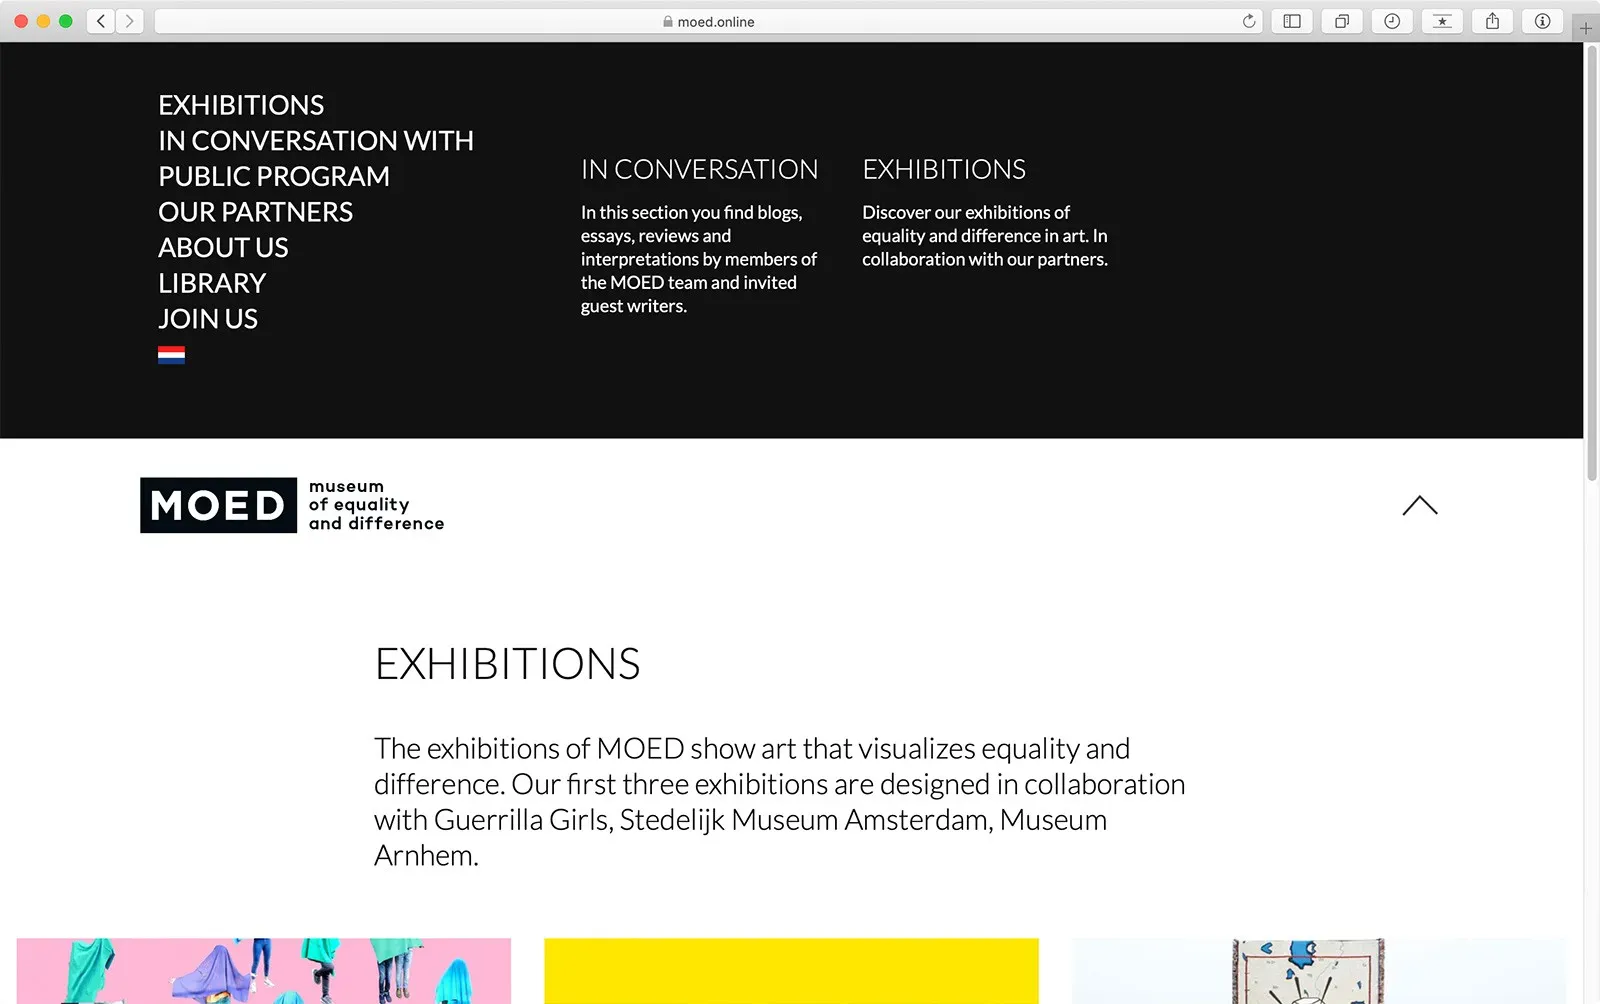 Pagina exposities met uitgeklapt navigatiemenu website MOED Museum